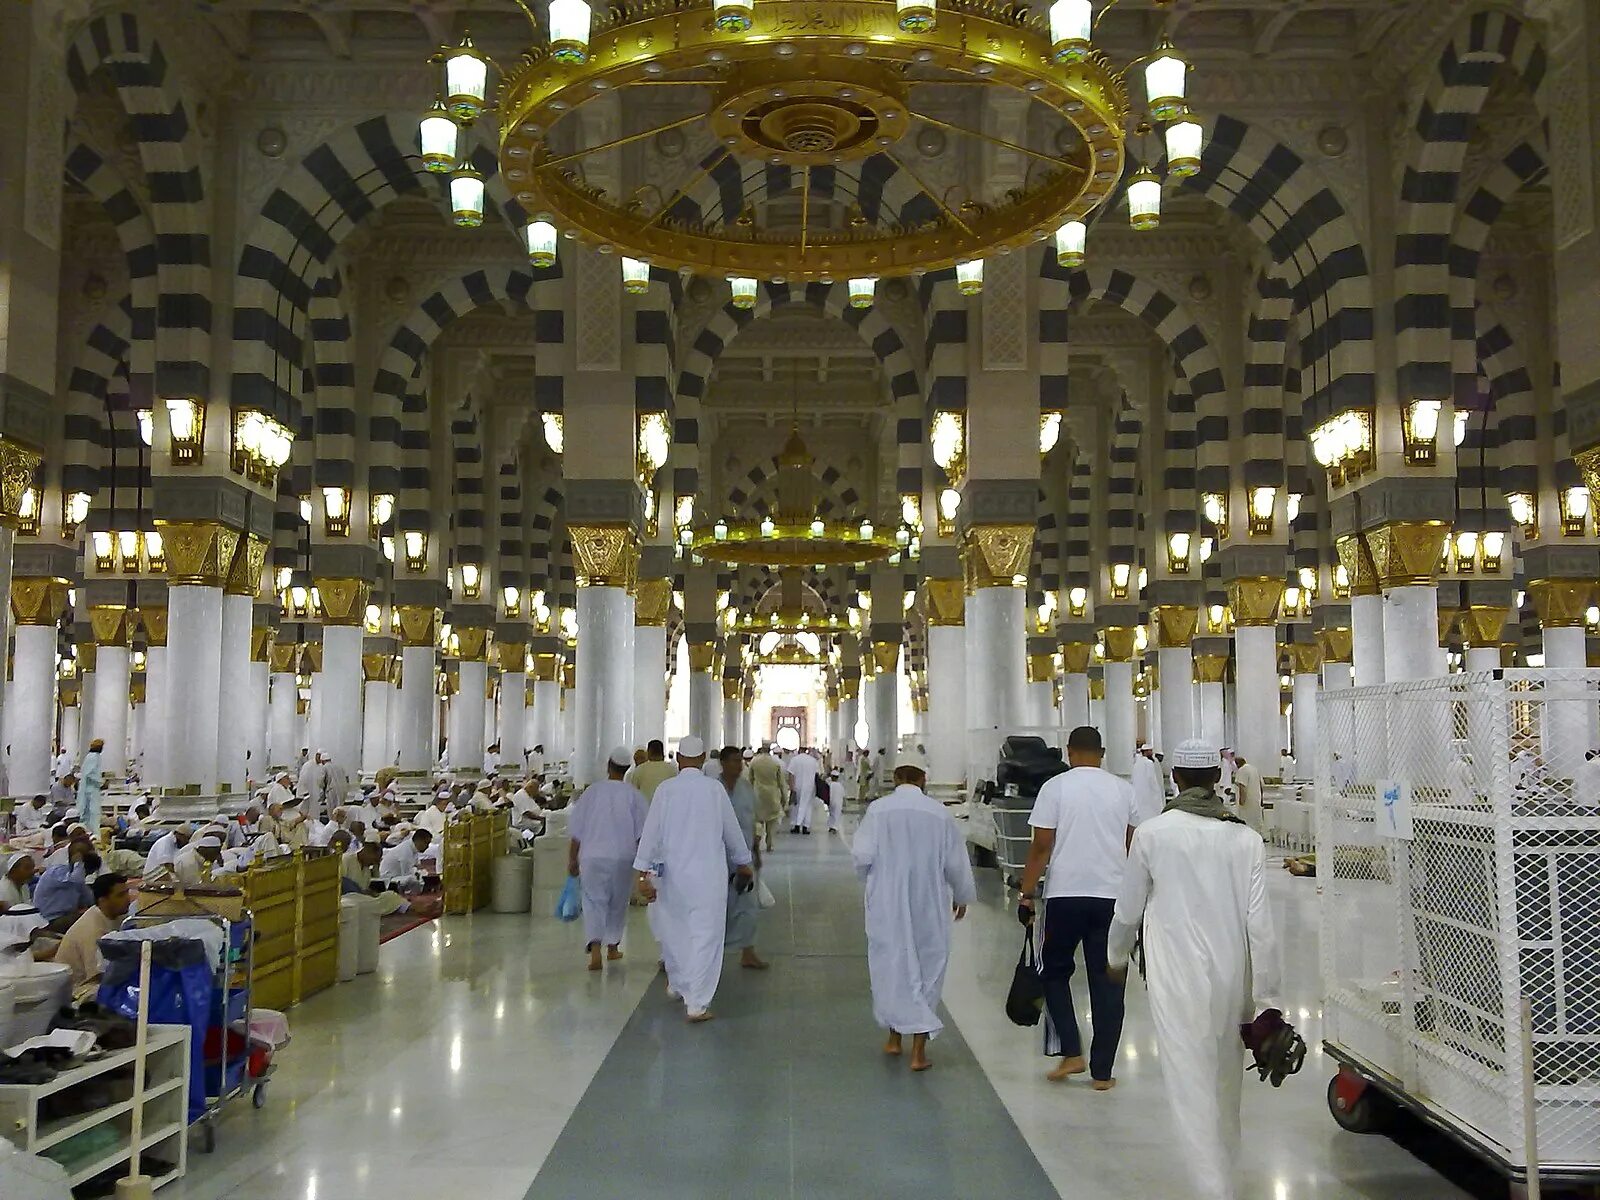 Масджид Аль Наби. Масджид АН-Набави Медина Саудовская Аравия. Мечеть пророка (Масджид АН-Набави). Медина мечеть пророка Мухаммеда.